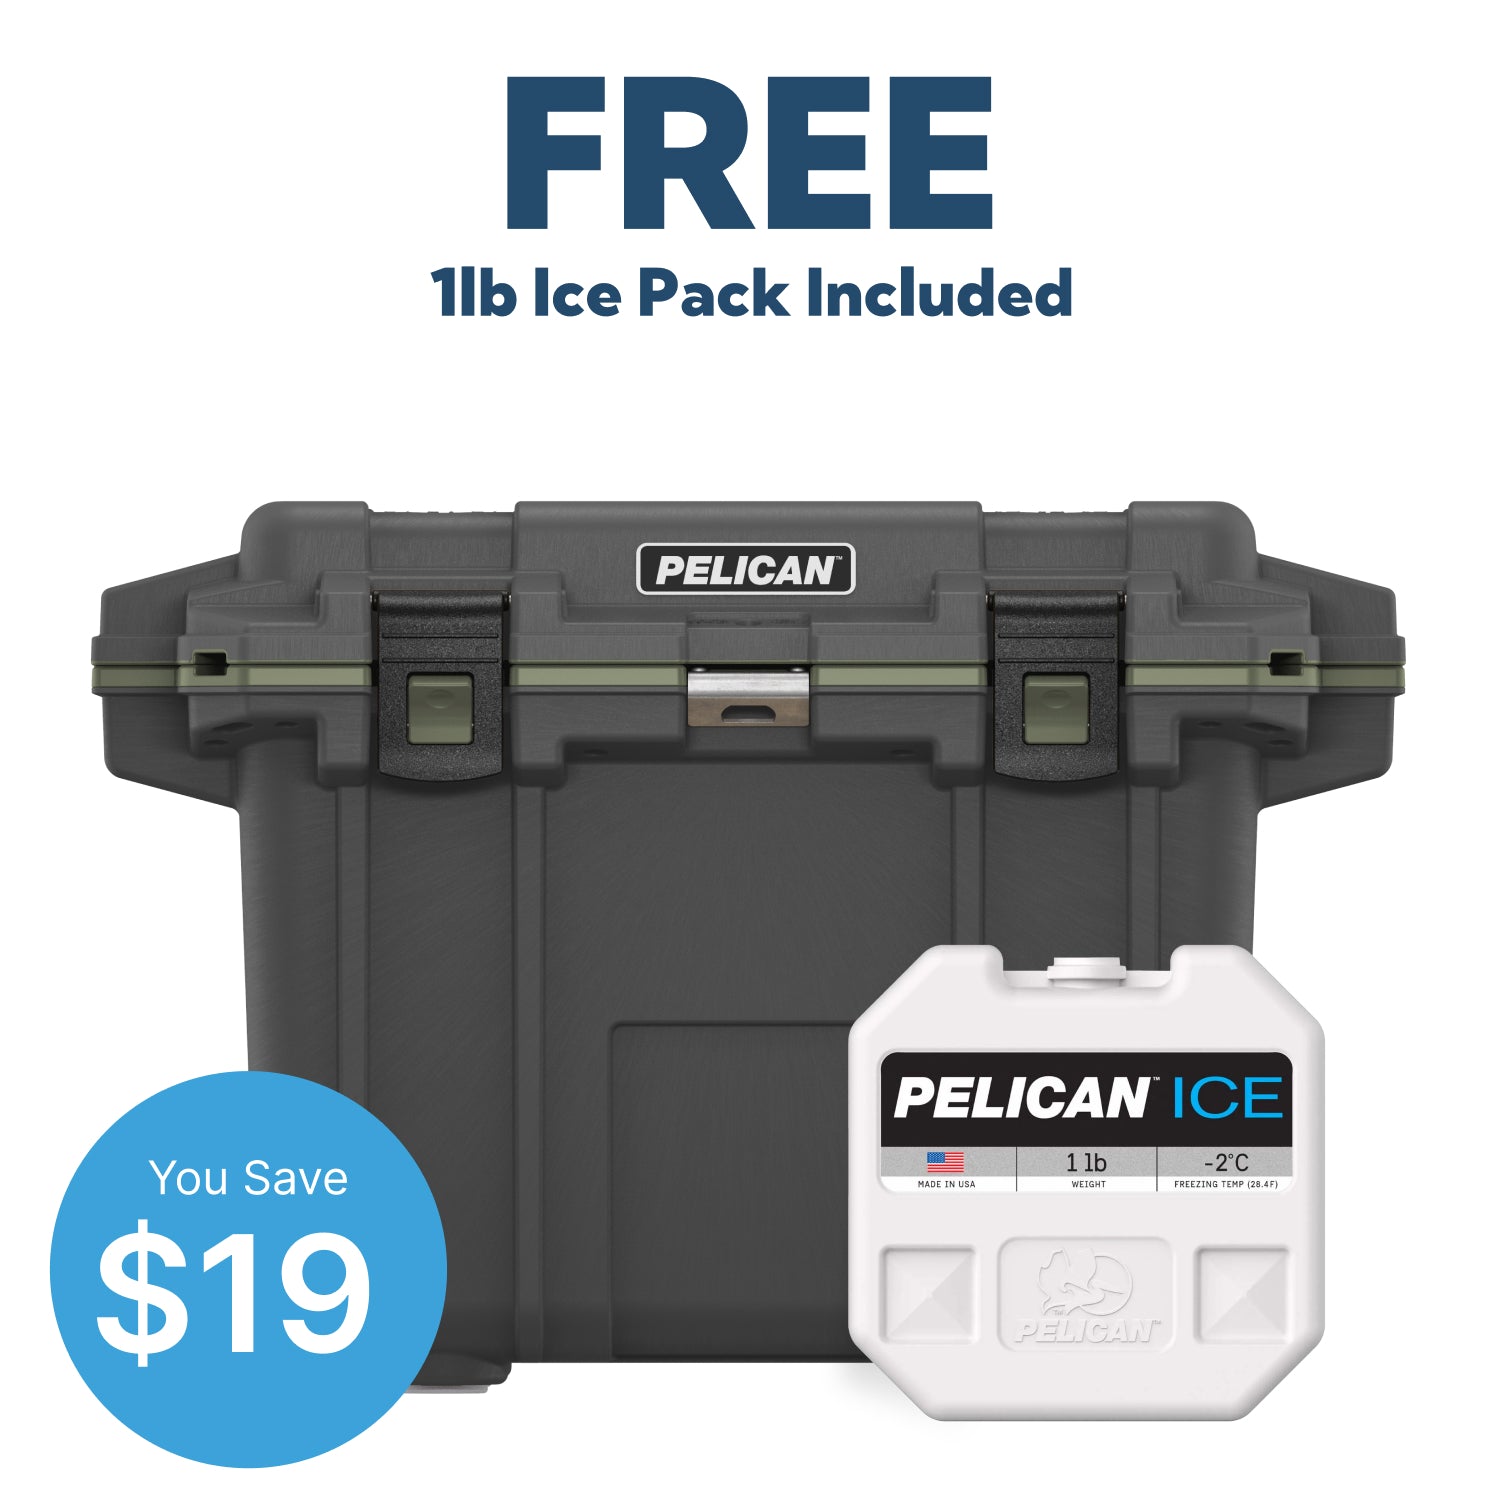 Gumetal / OD Green Pelican 50QT Elite Cooler & Free 1lb Pelican Ice Pack